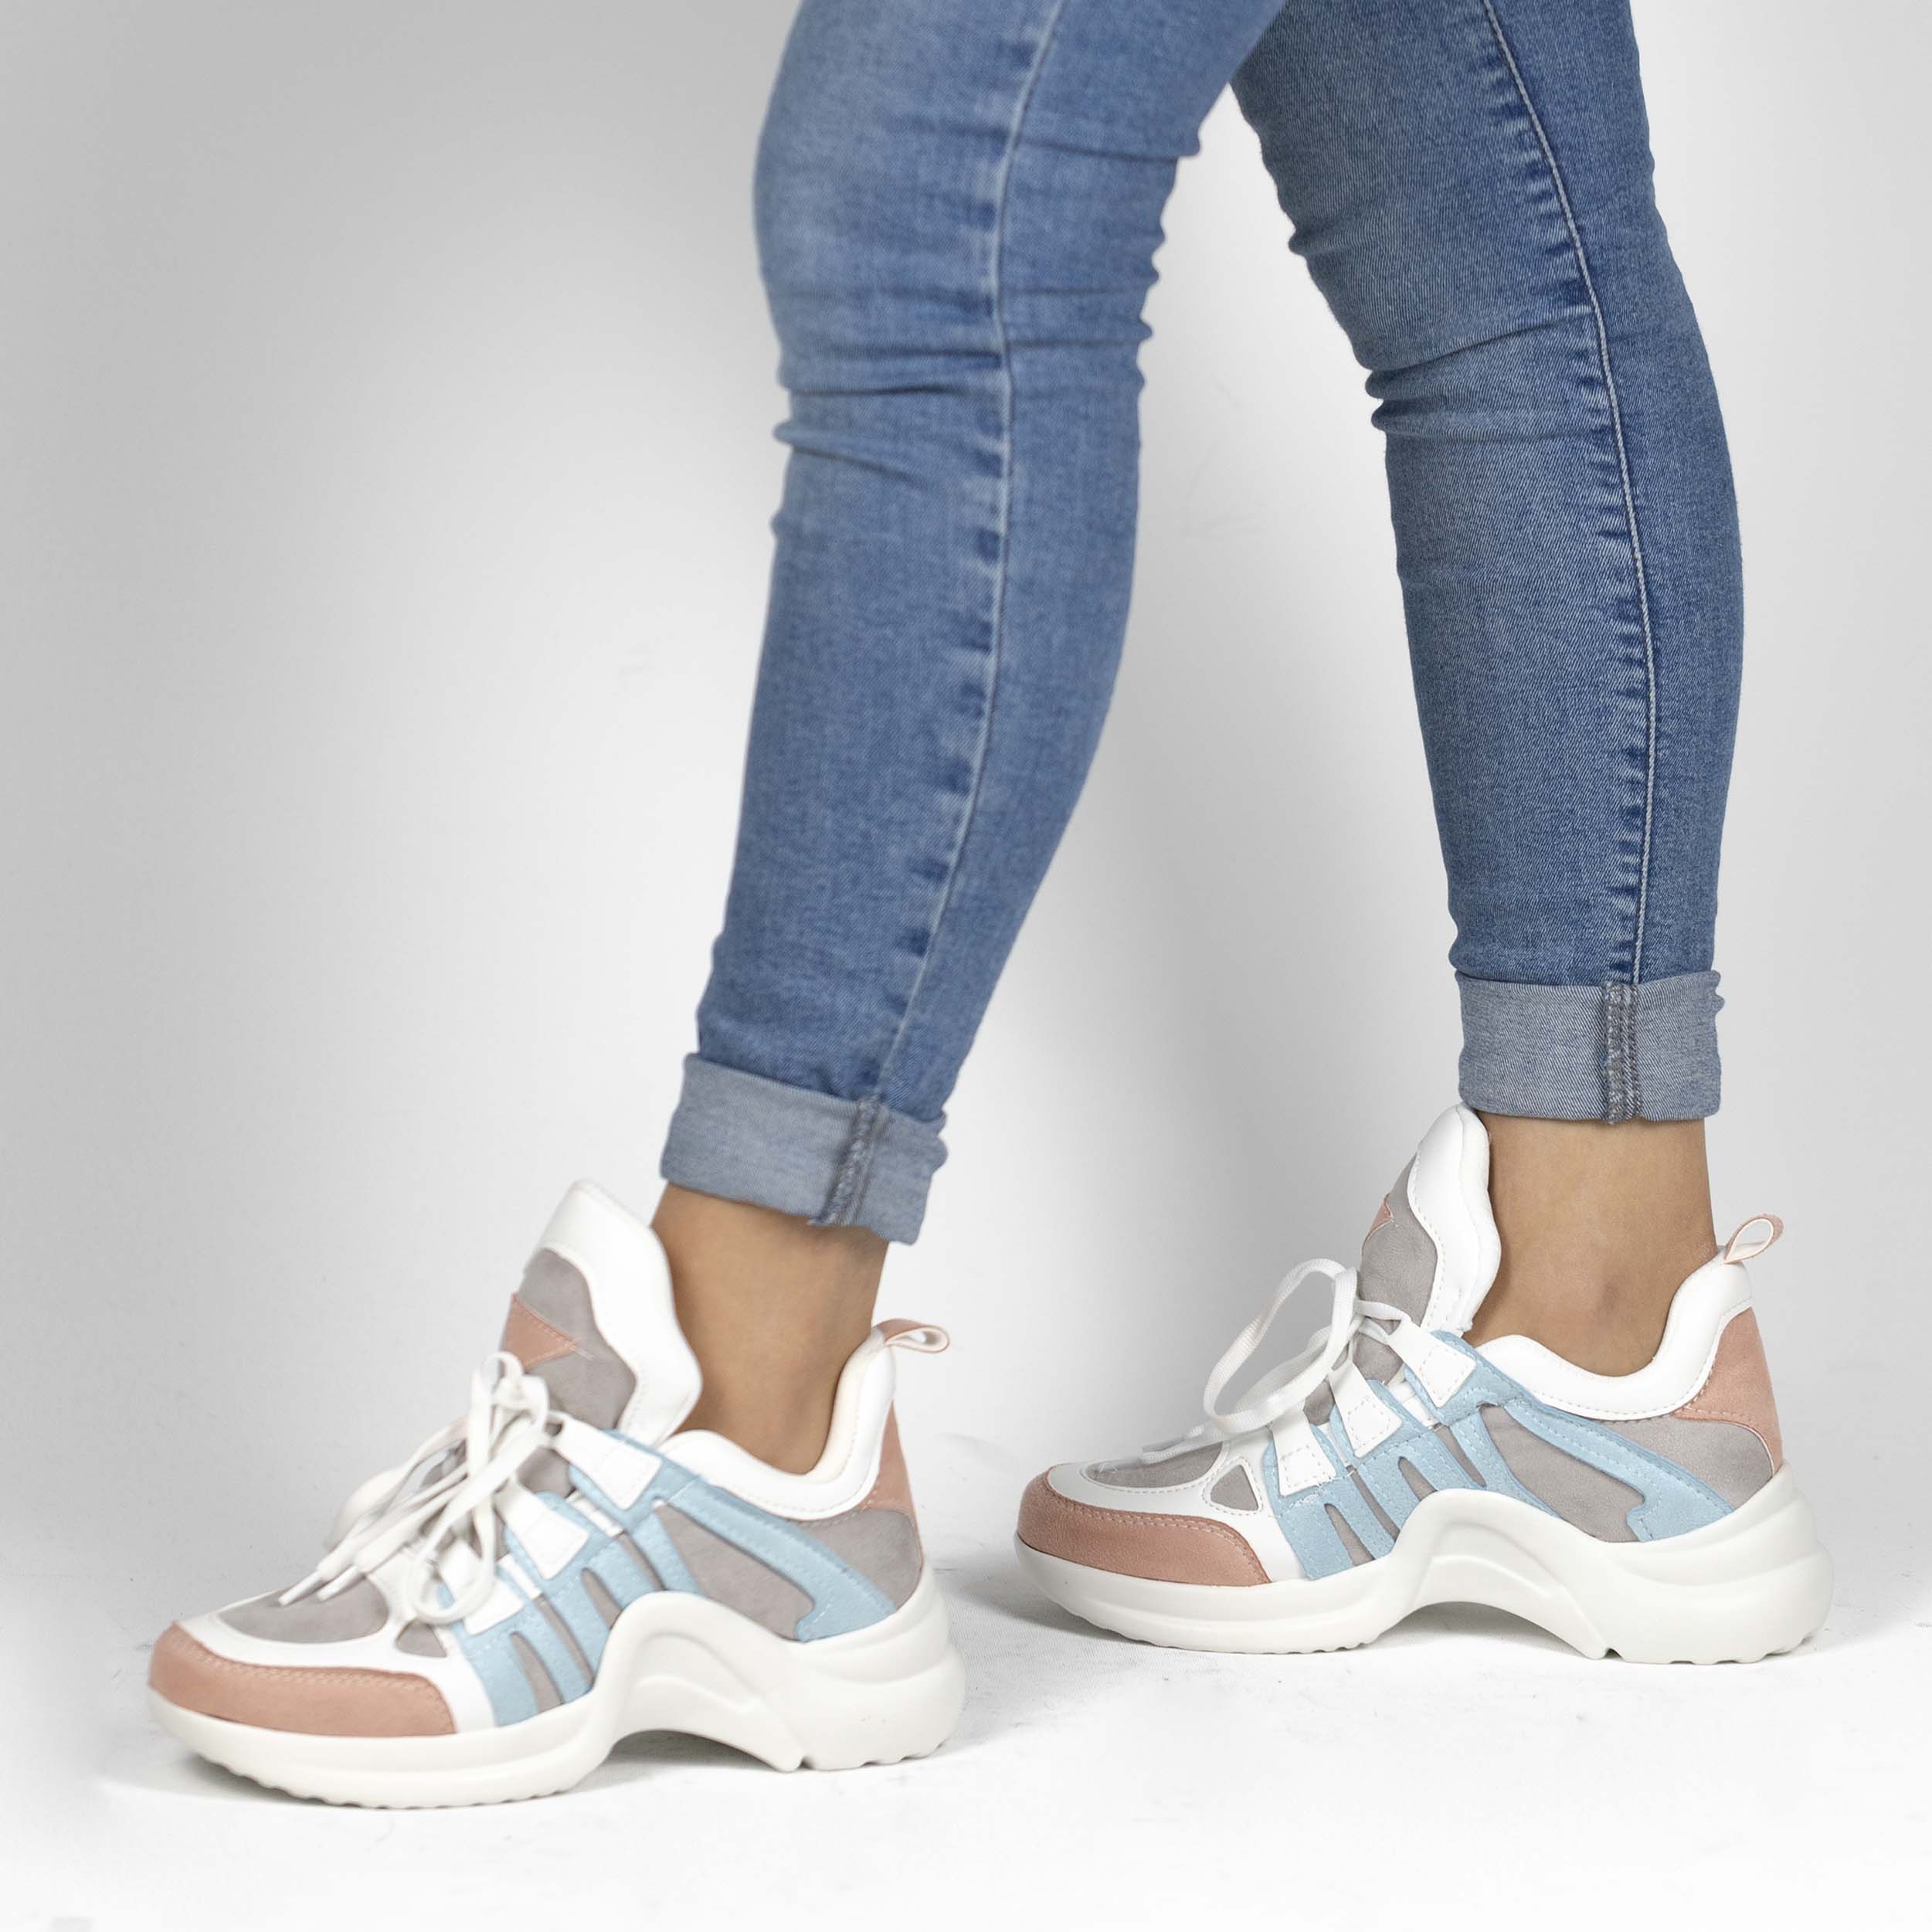 Kadın Kalın Tabanlı Spor Günlük Renkli Sneakers Ayakkabı, Renk: Beyaz - Mavi, Beden: 38